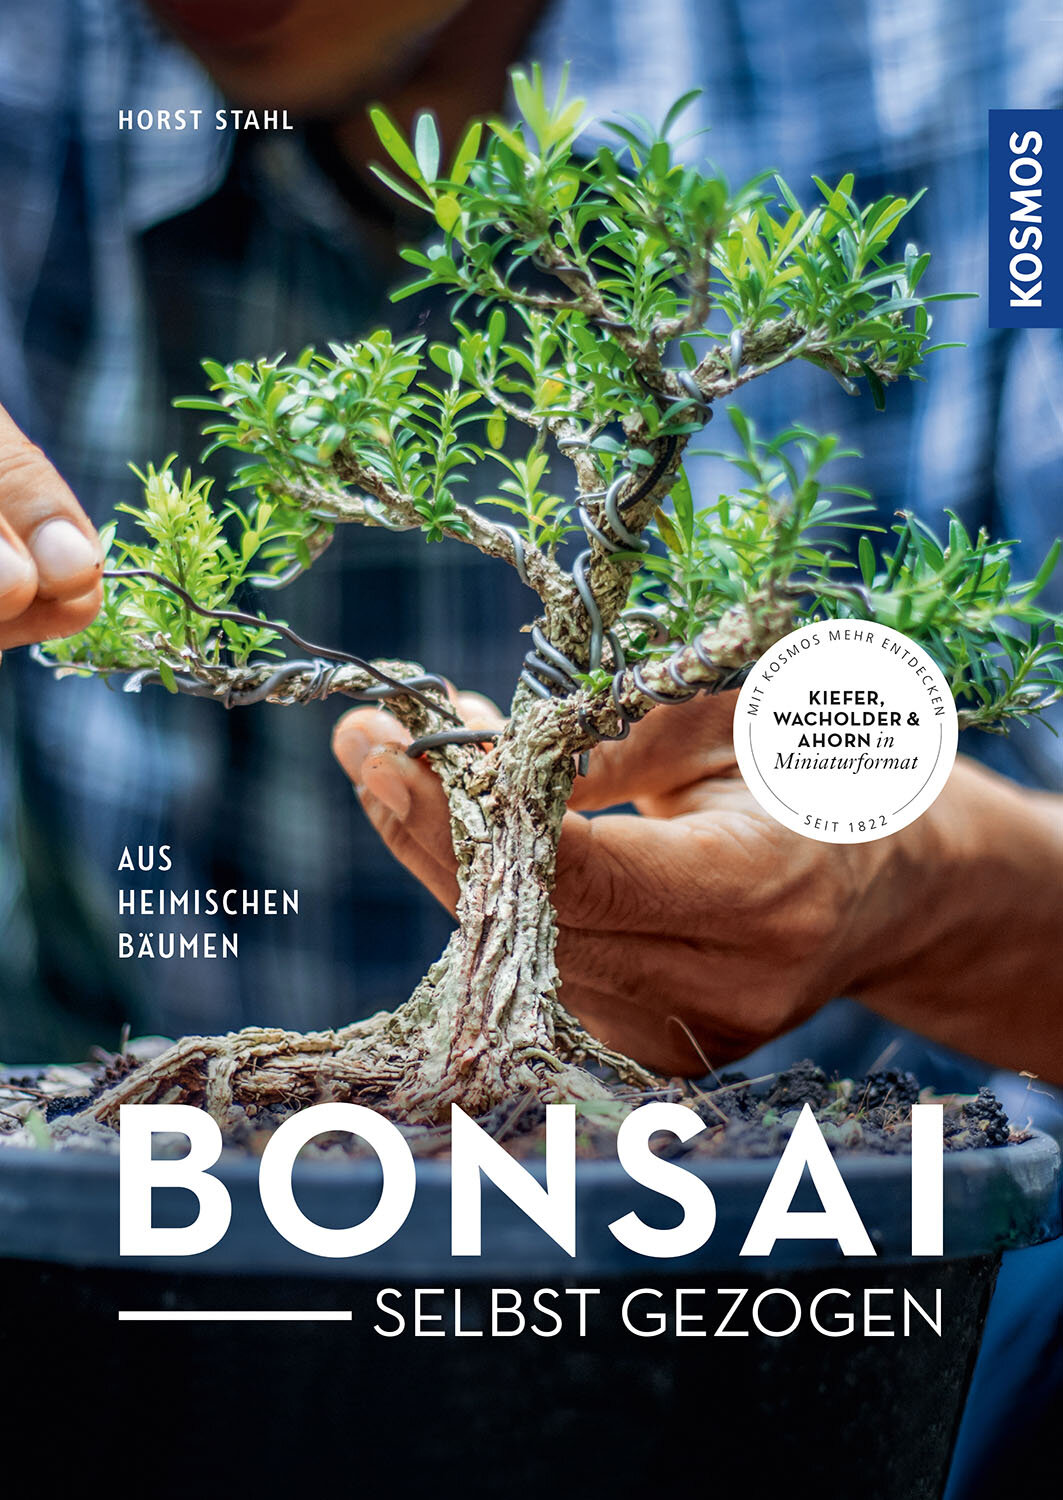 Bonsai selbst gezogen